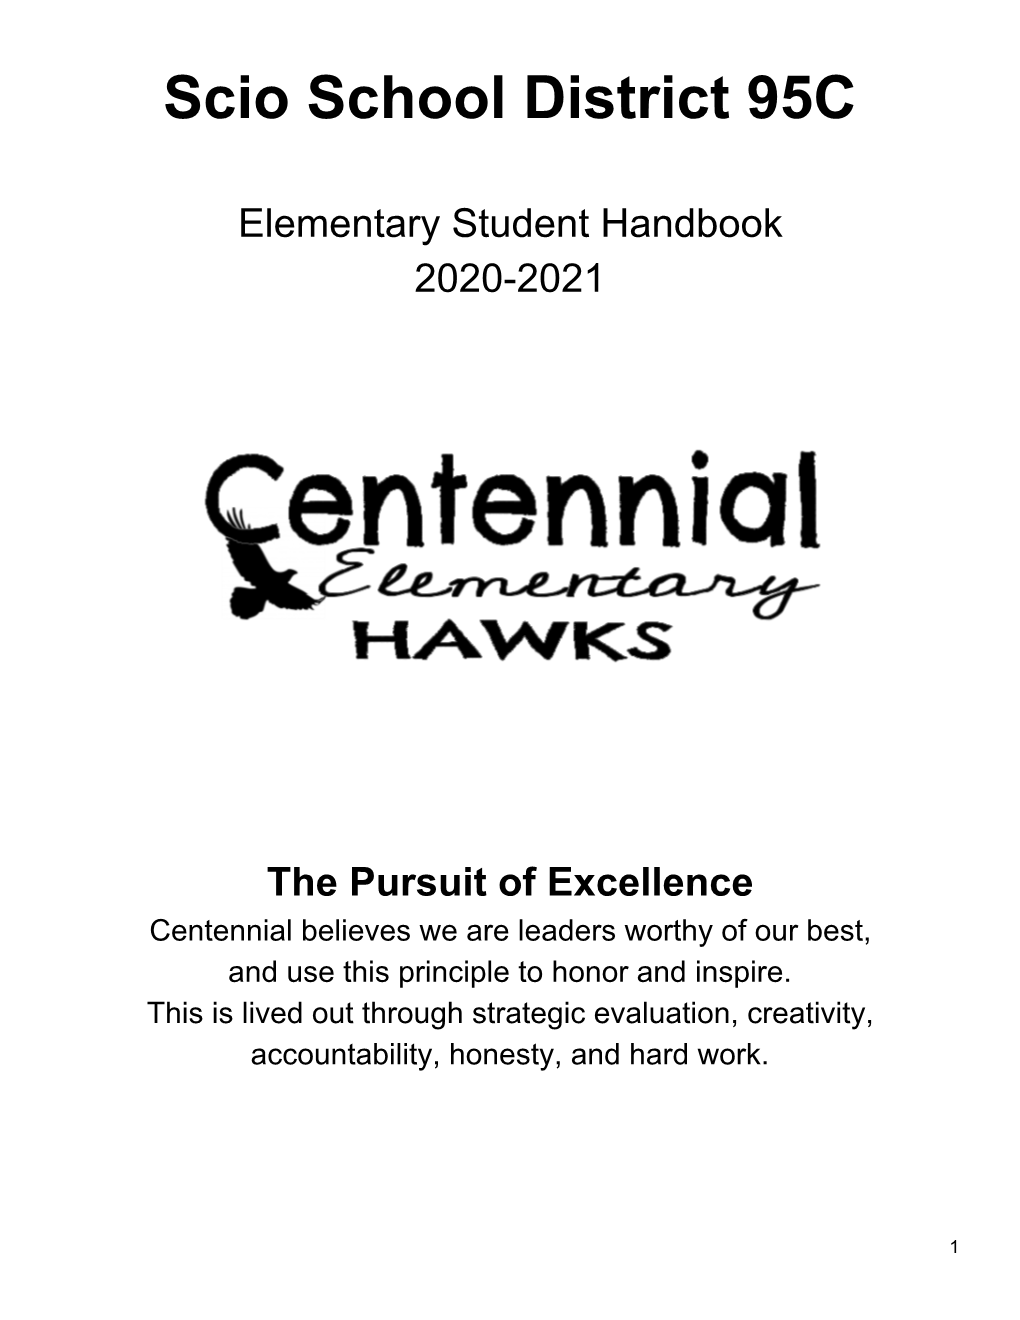 Student Handbook 2020-2021